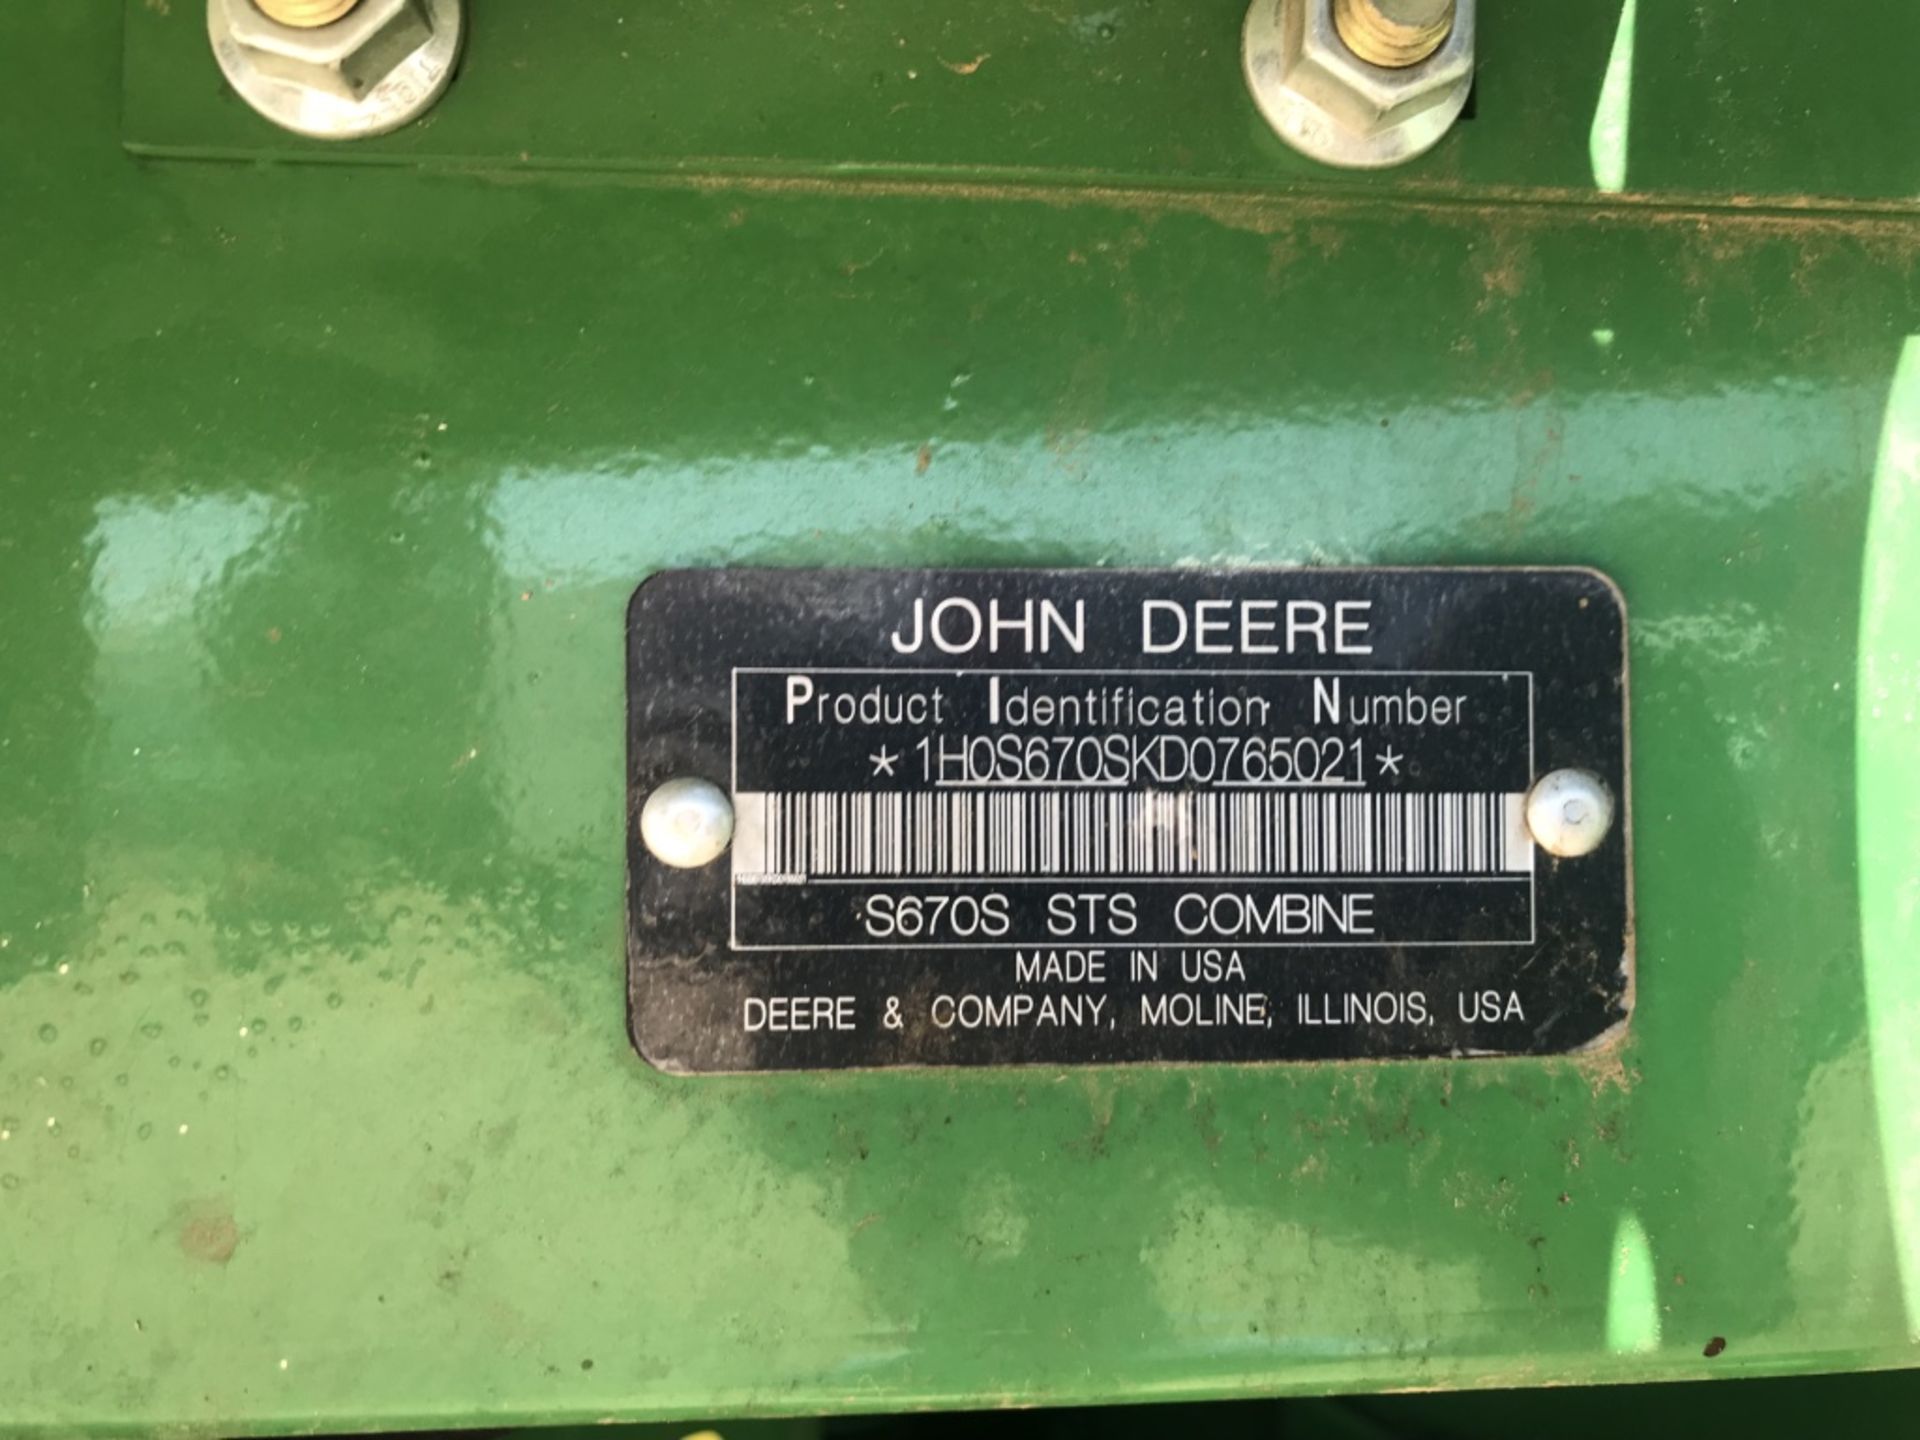 2014 JOHN DEERE S670 STS COMBINE HARVESTER (NO HEAD) - (1H056705KD0765021) - Image 4 of 4